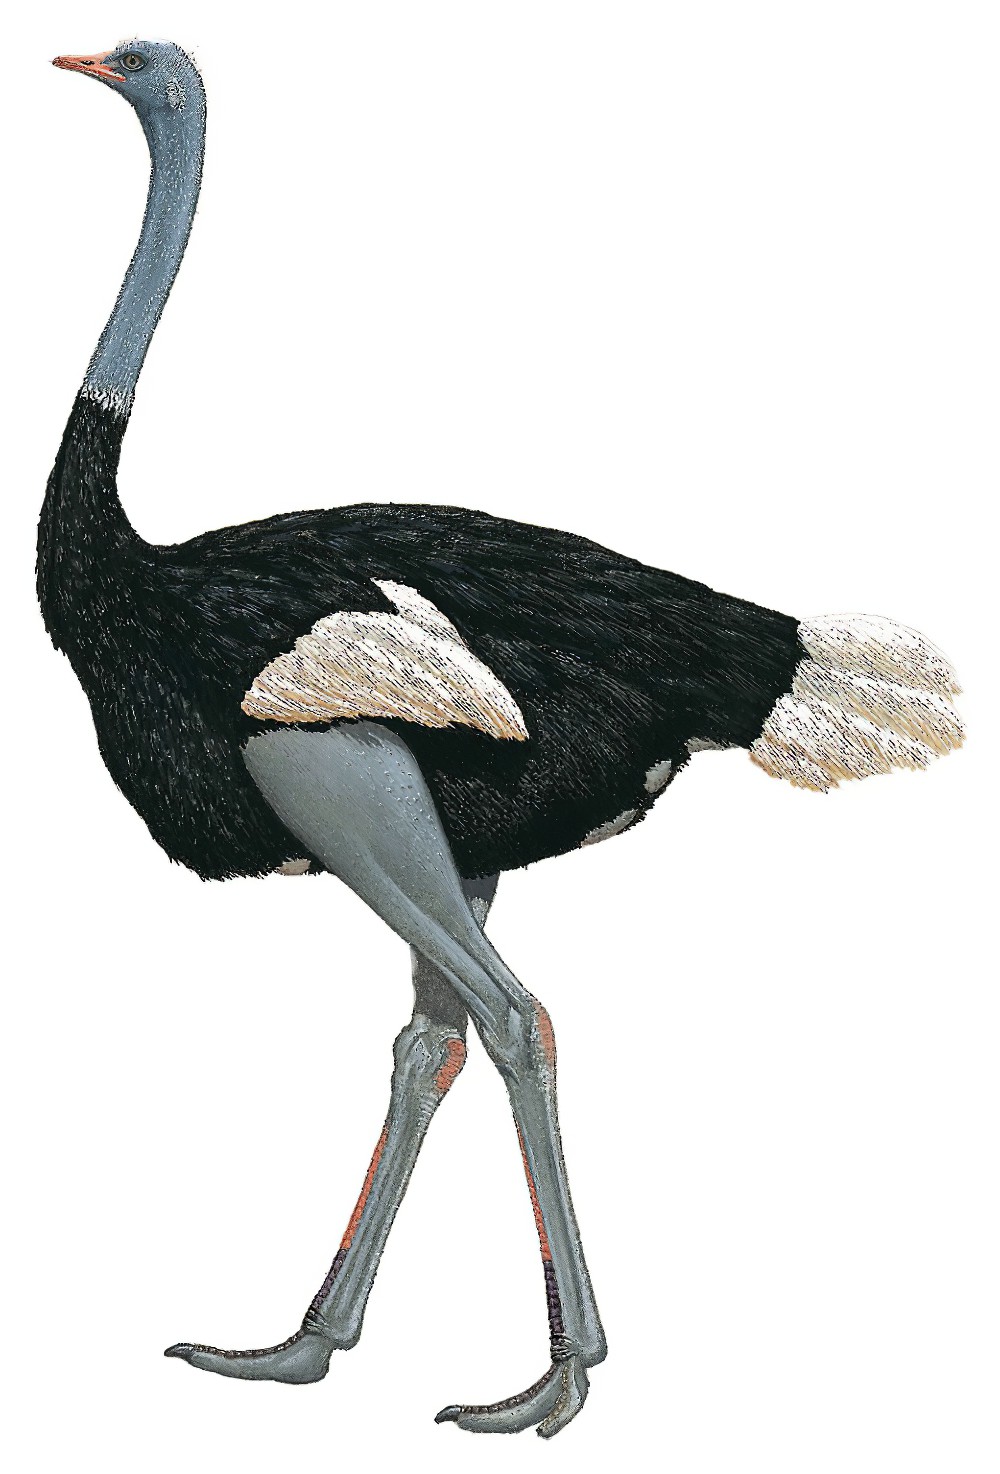 Somali Ostrich / Struthio molybdophanes